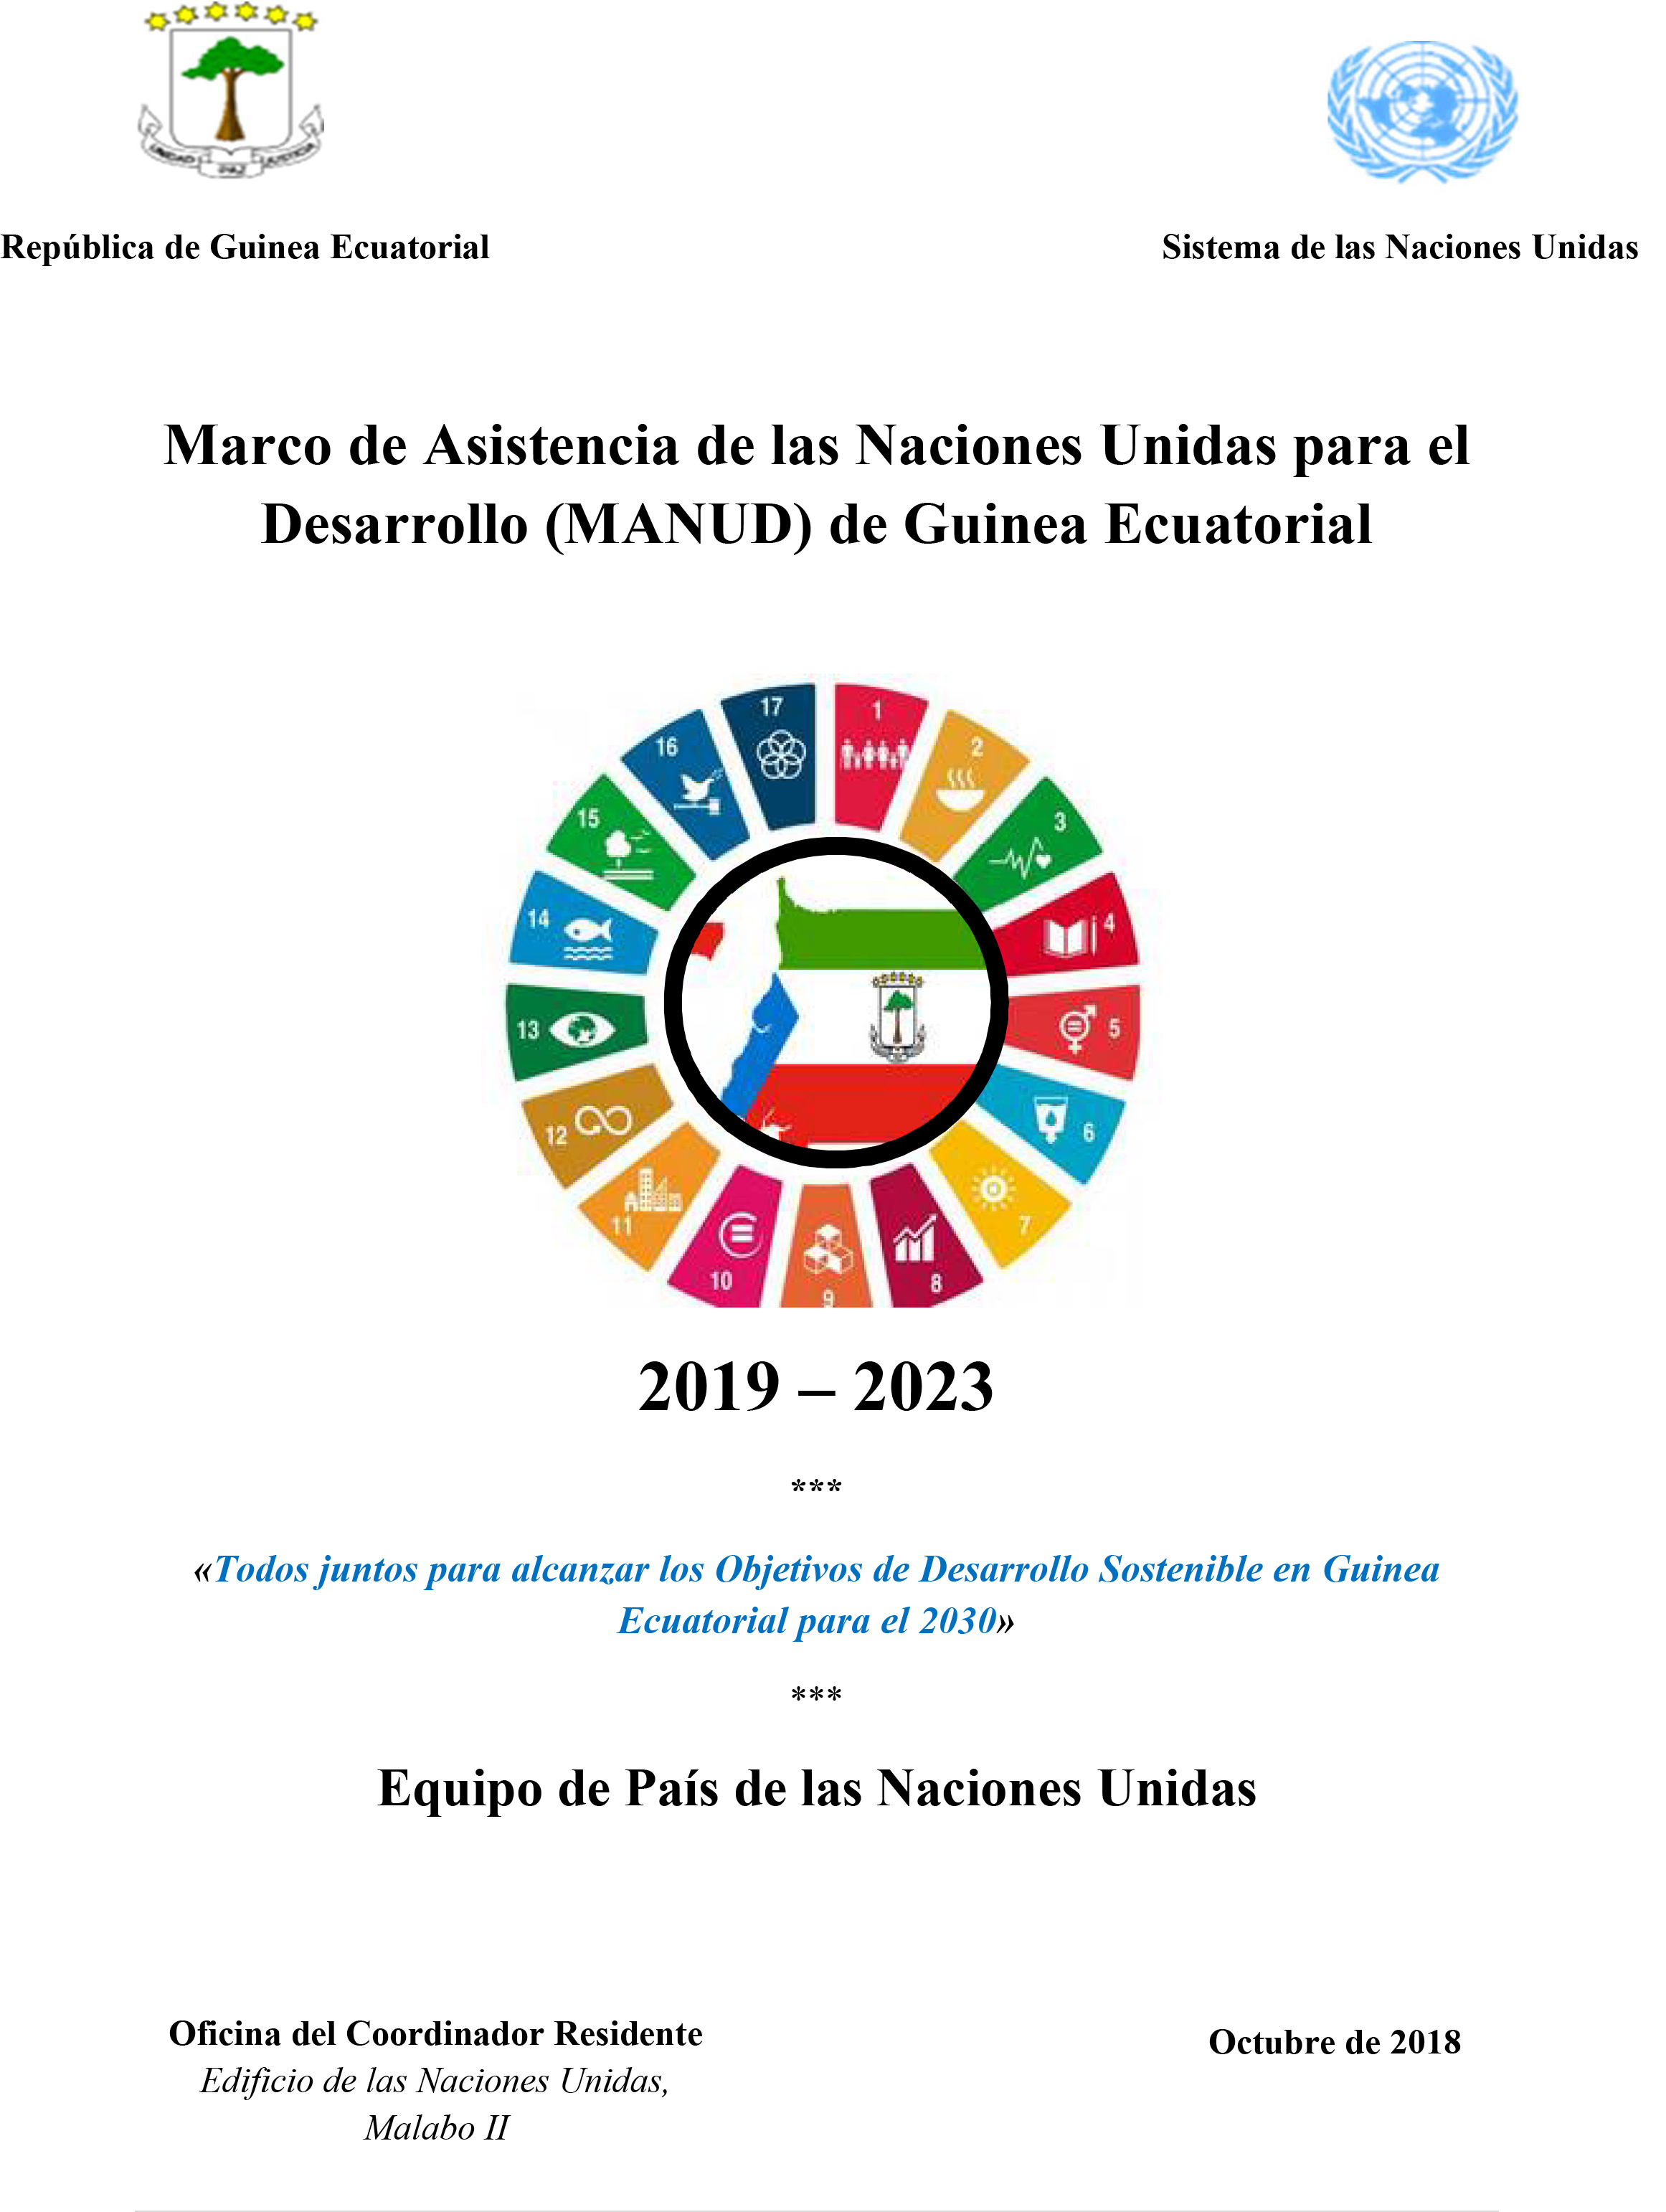 Marco de Asistencia de las Naciones Unidas para el Desarrollo (MANUD) de Guinea Ecuatorial 